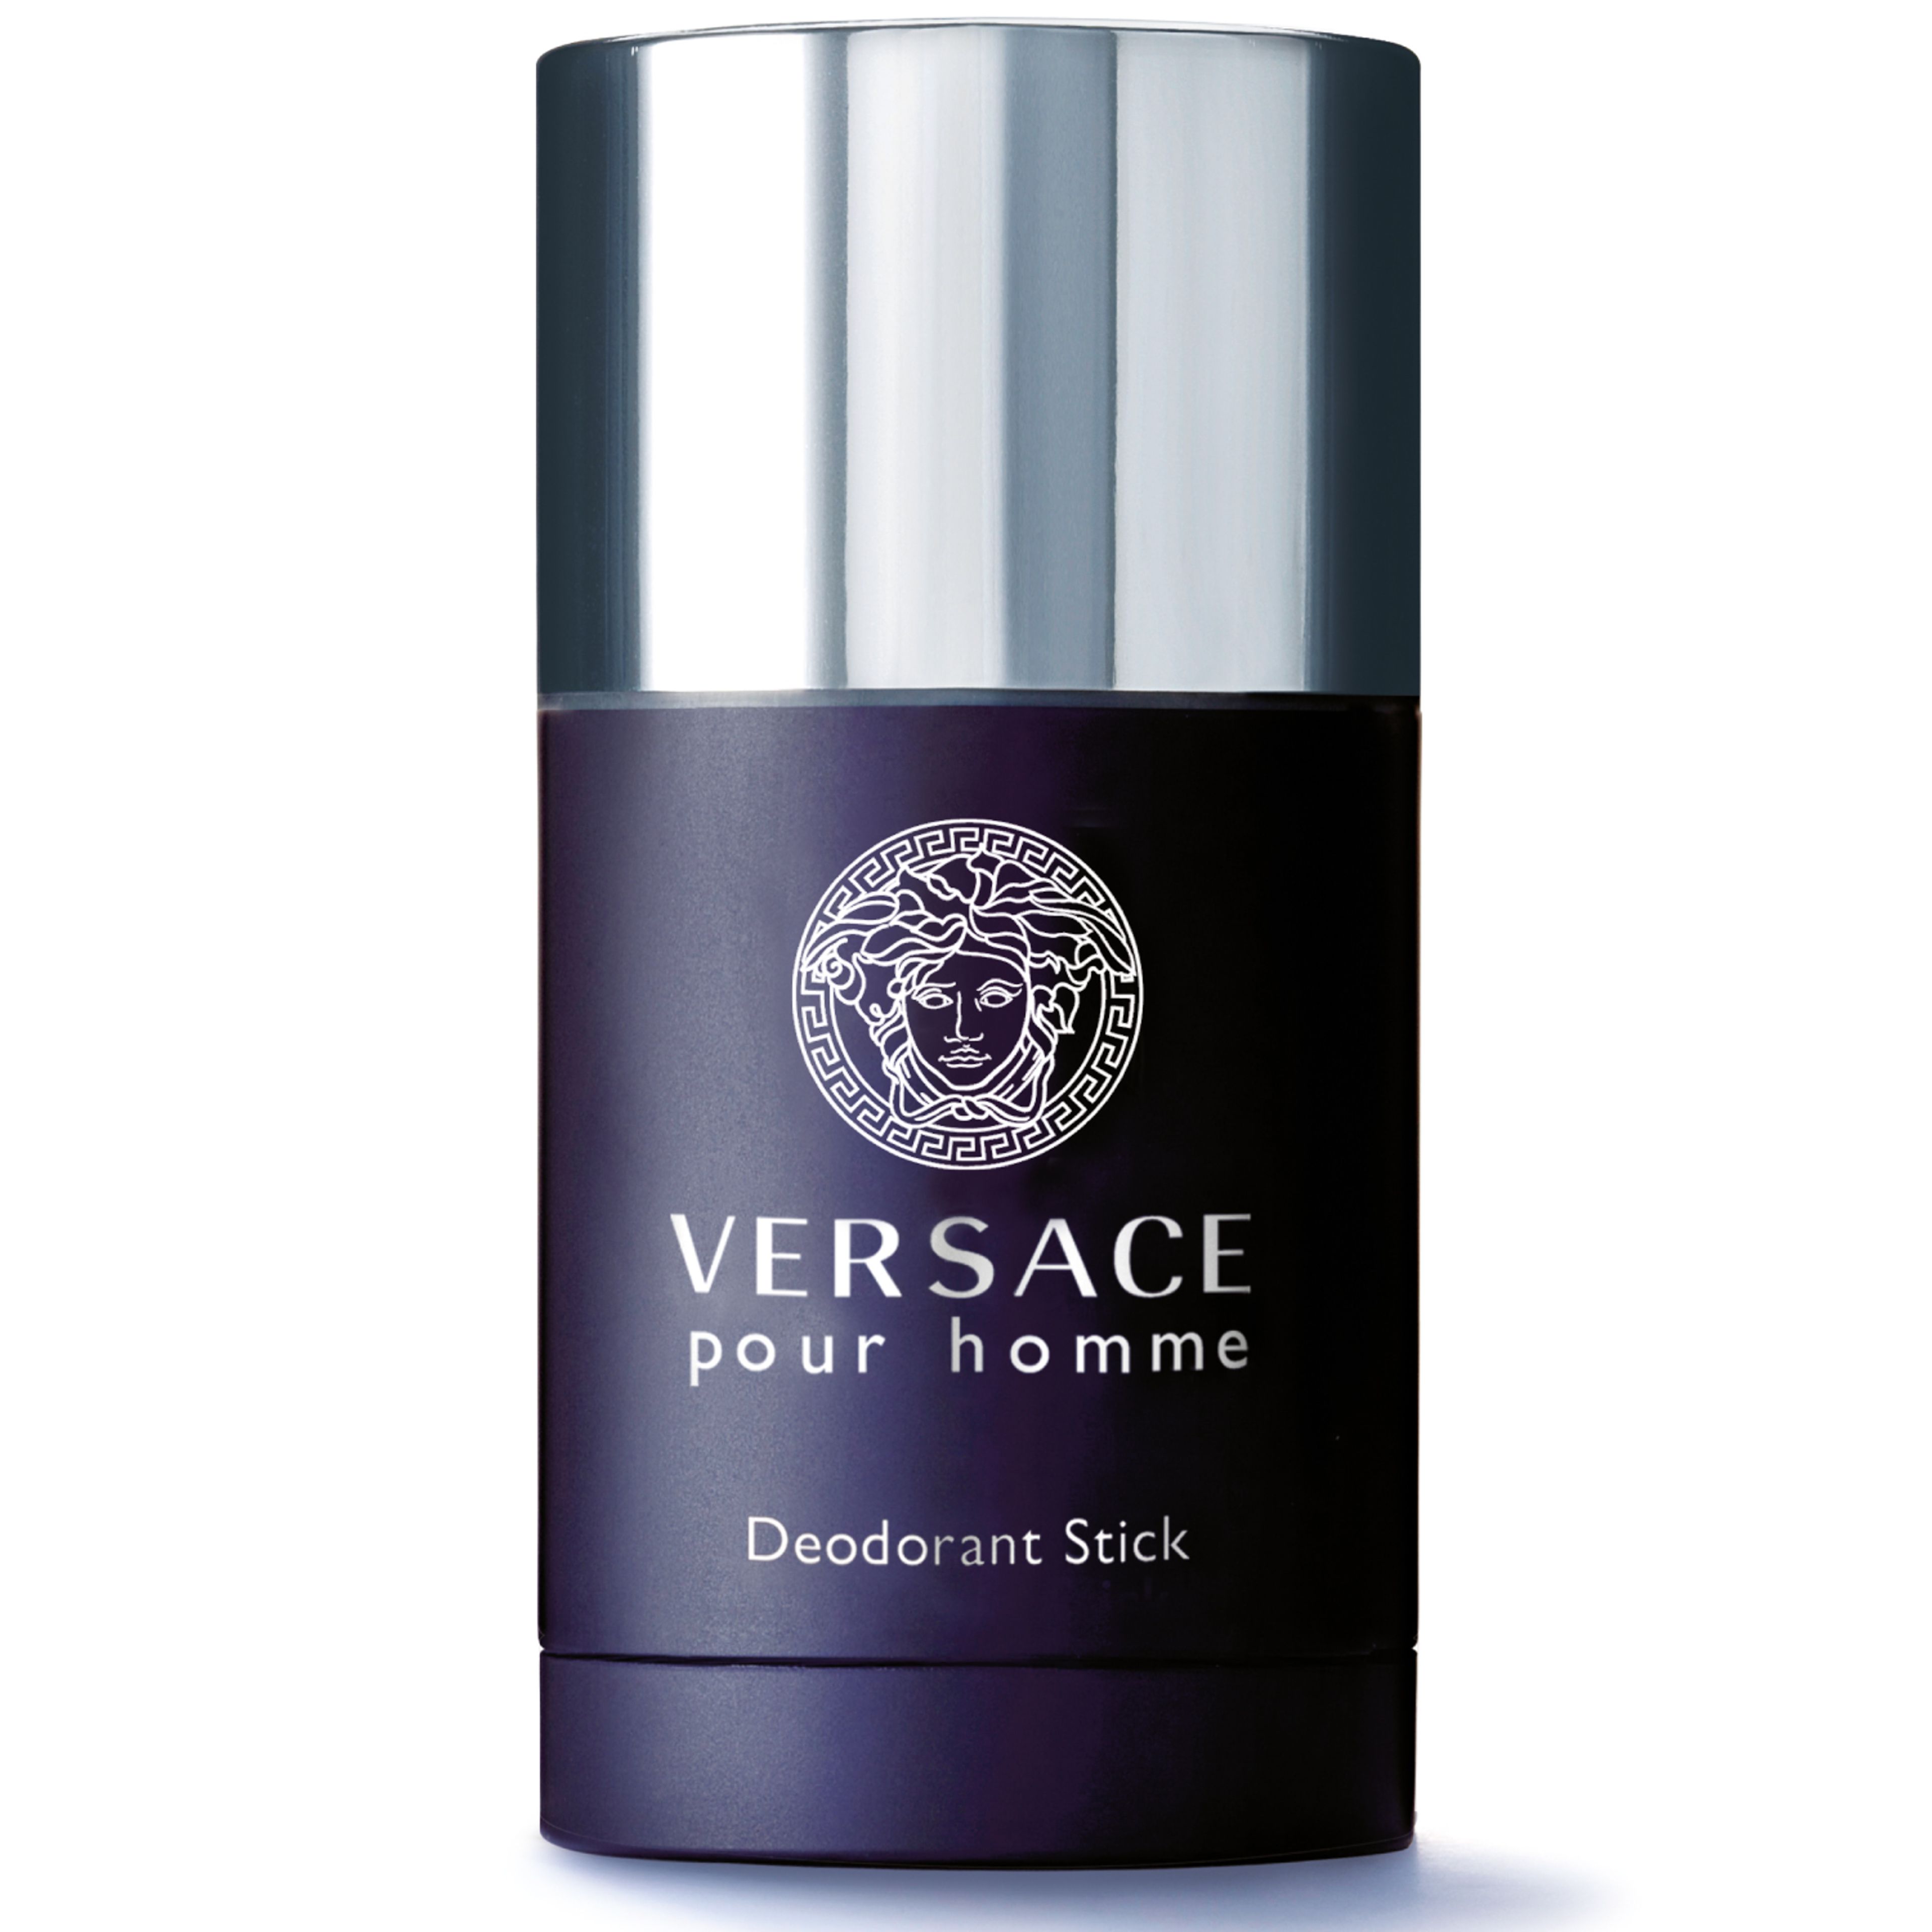 Versace Pour Homme Deodorant Stick 1